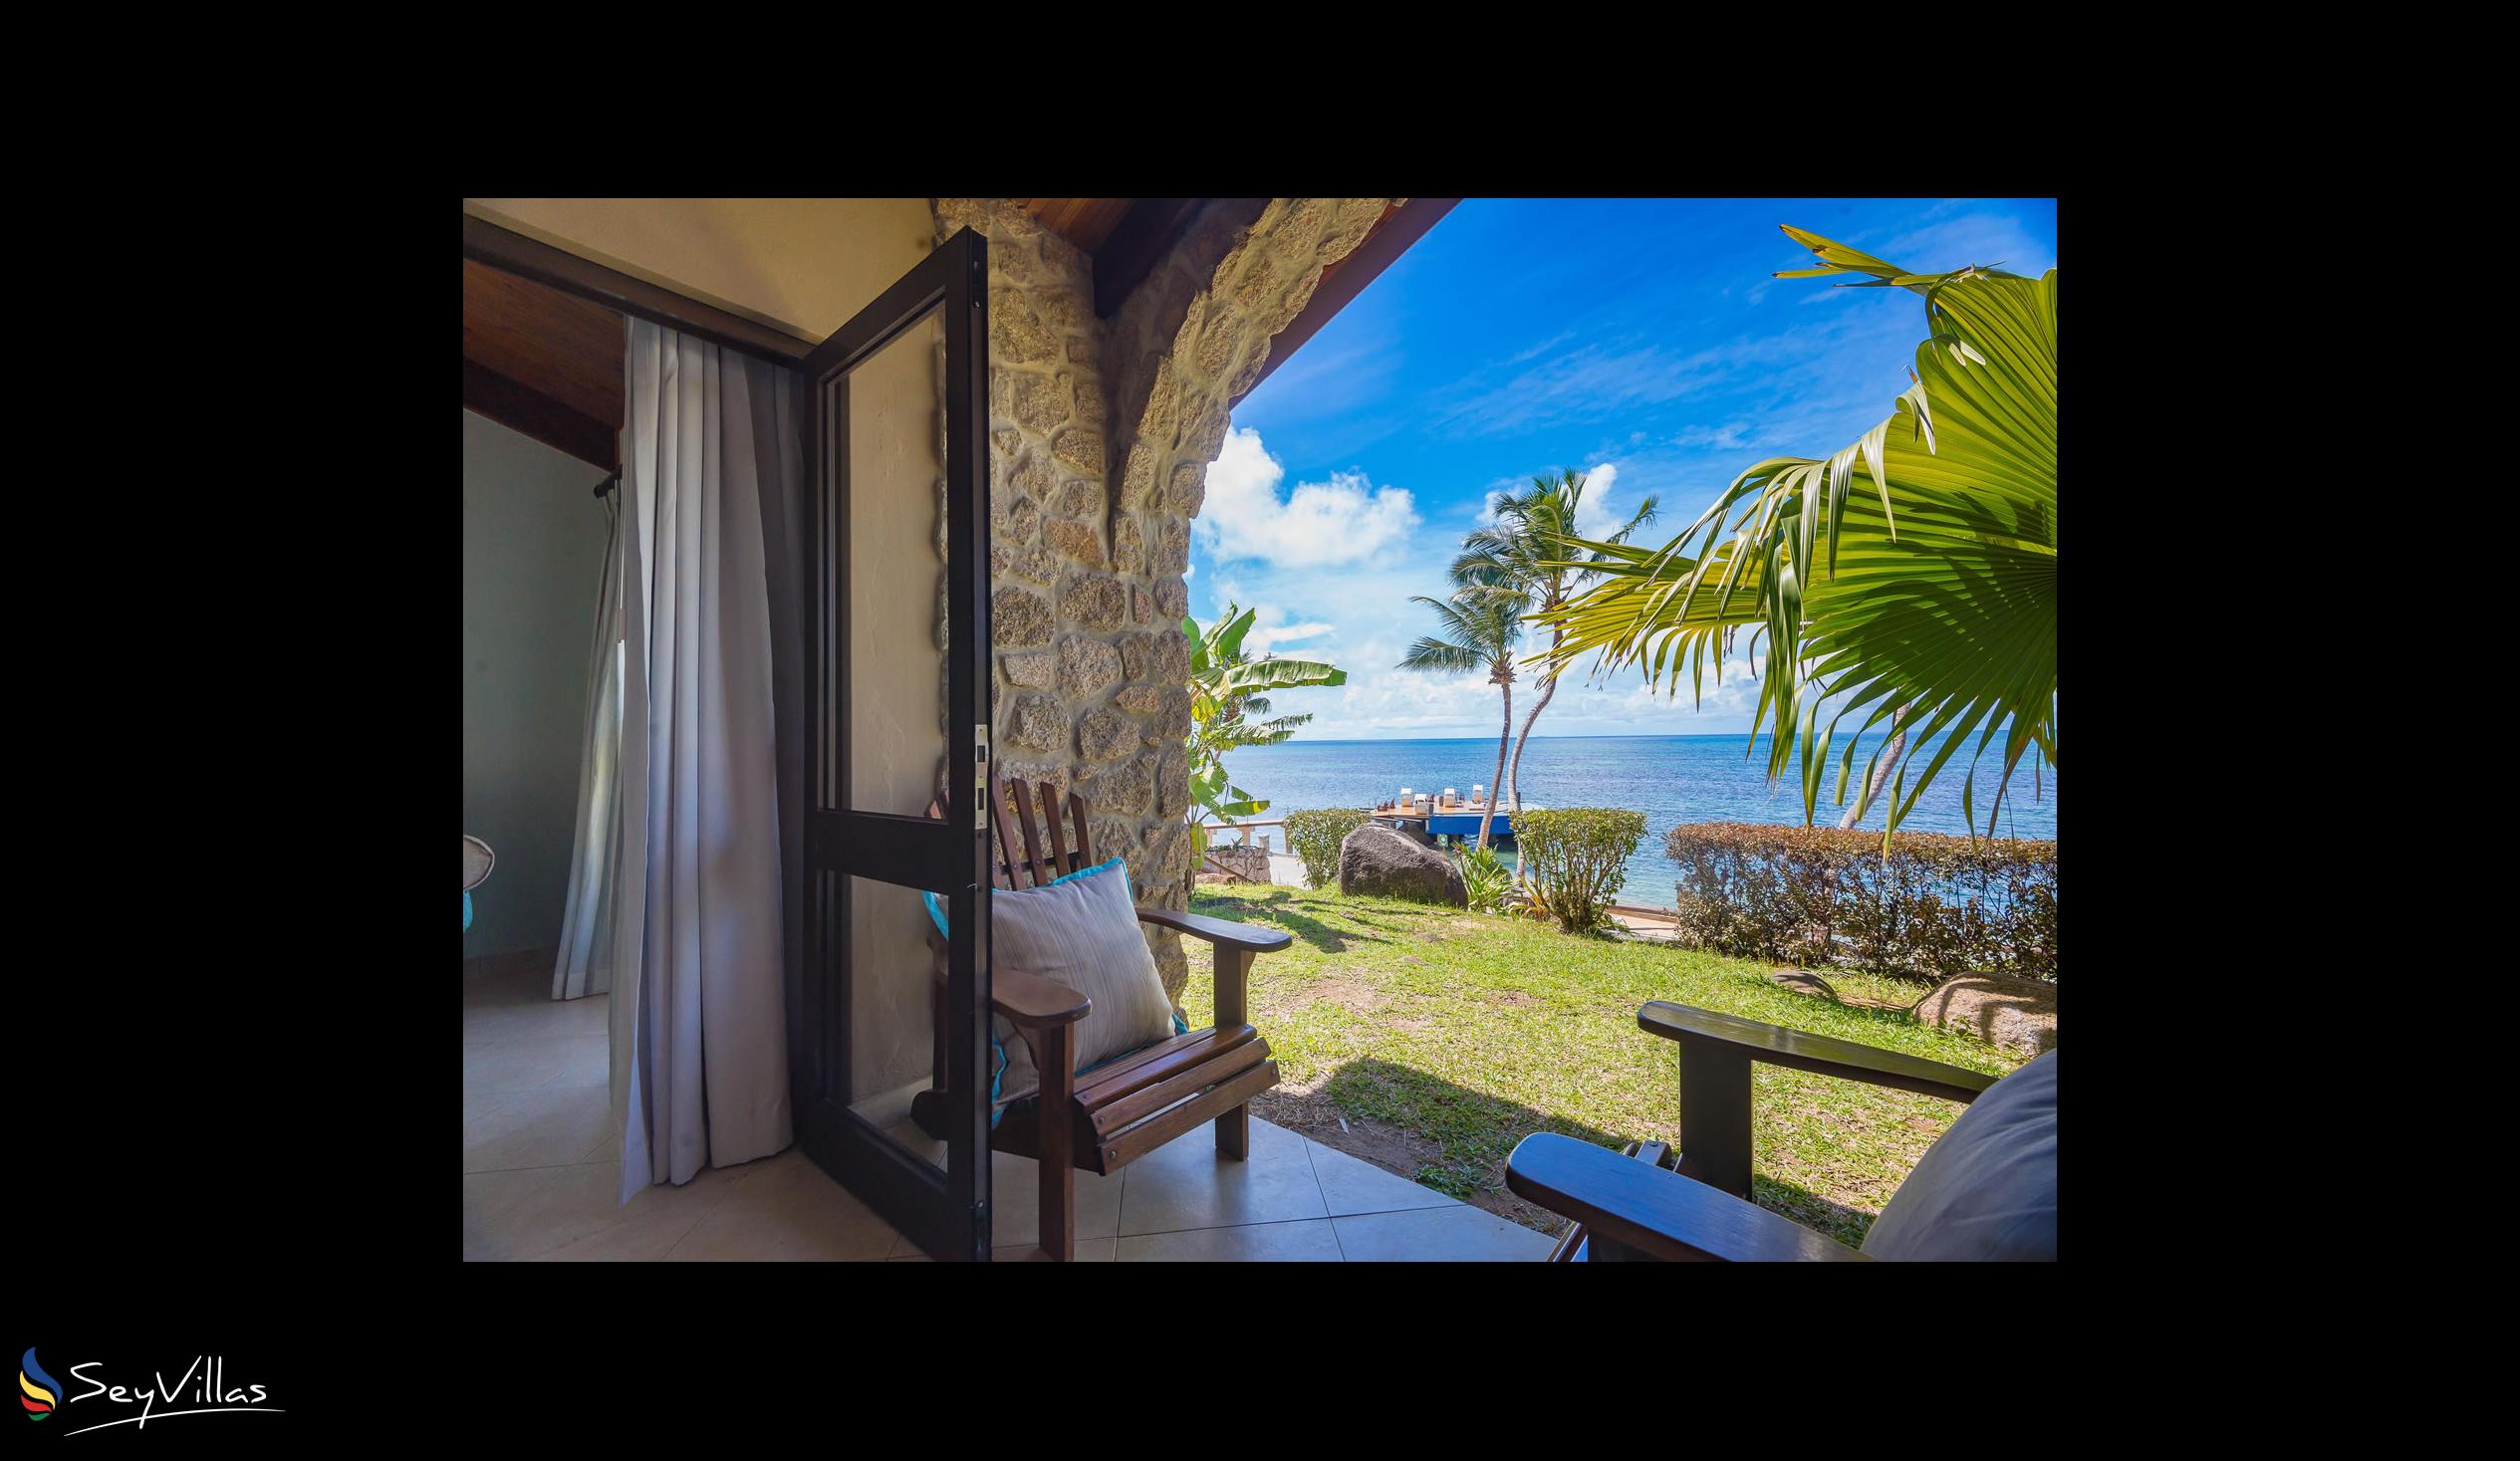 Foto 54: Coco de Mer & Black Parrot Suites - Standard - Praslin (Seychellen)